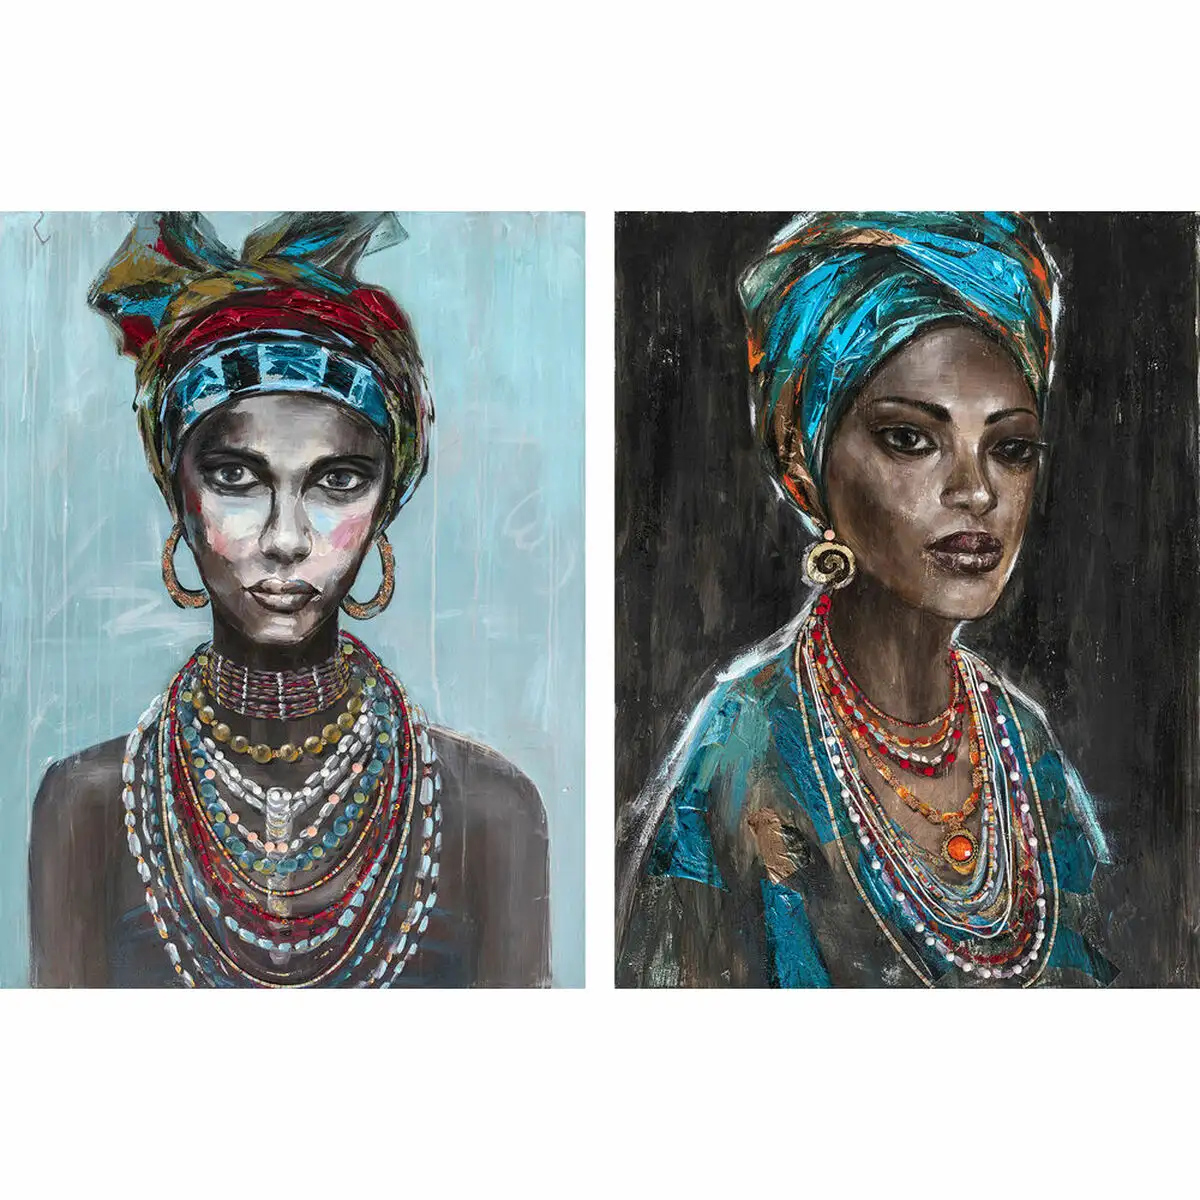 Peinture dkd home decor 90 x 2 4 x 120 cm femme africaine coloniale 2 unite s_7778. Entrez dans l'Univers de DIAYTAR SENEGAL - Où l'Authenticité Renouvelle Votre Quotidien. Explorez notre gamme de produits et trouvez des articles qui reflètent votre essence.